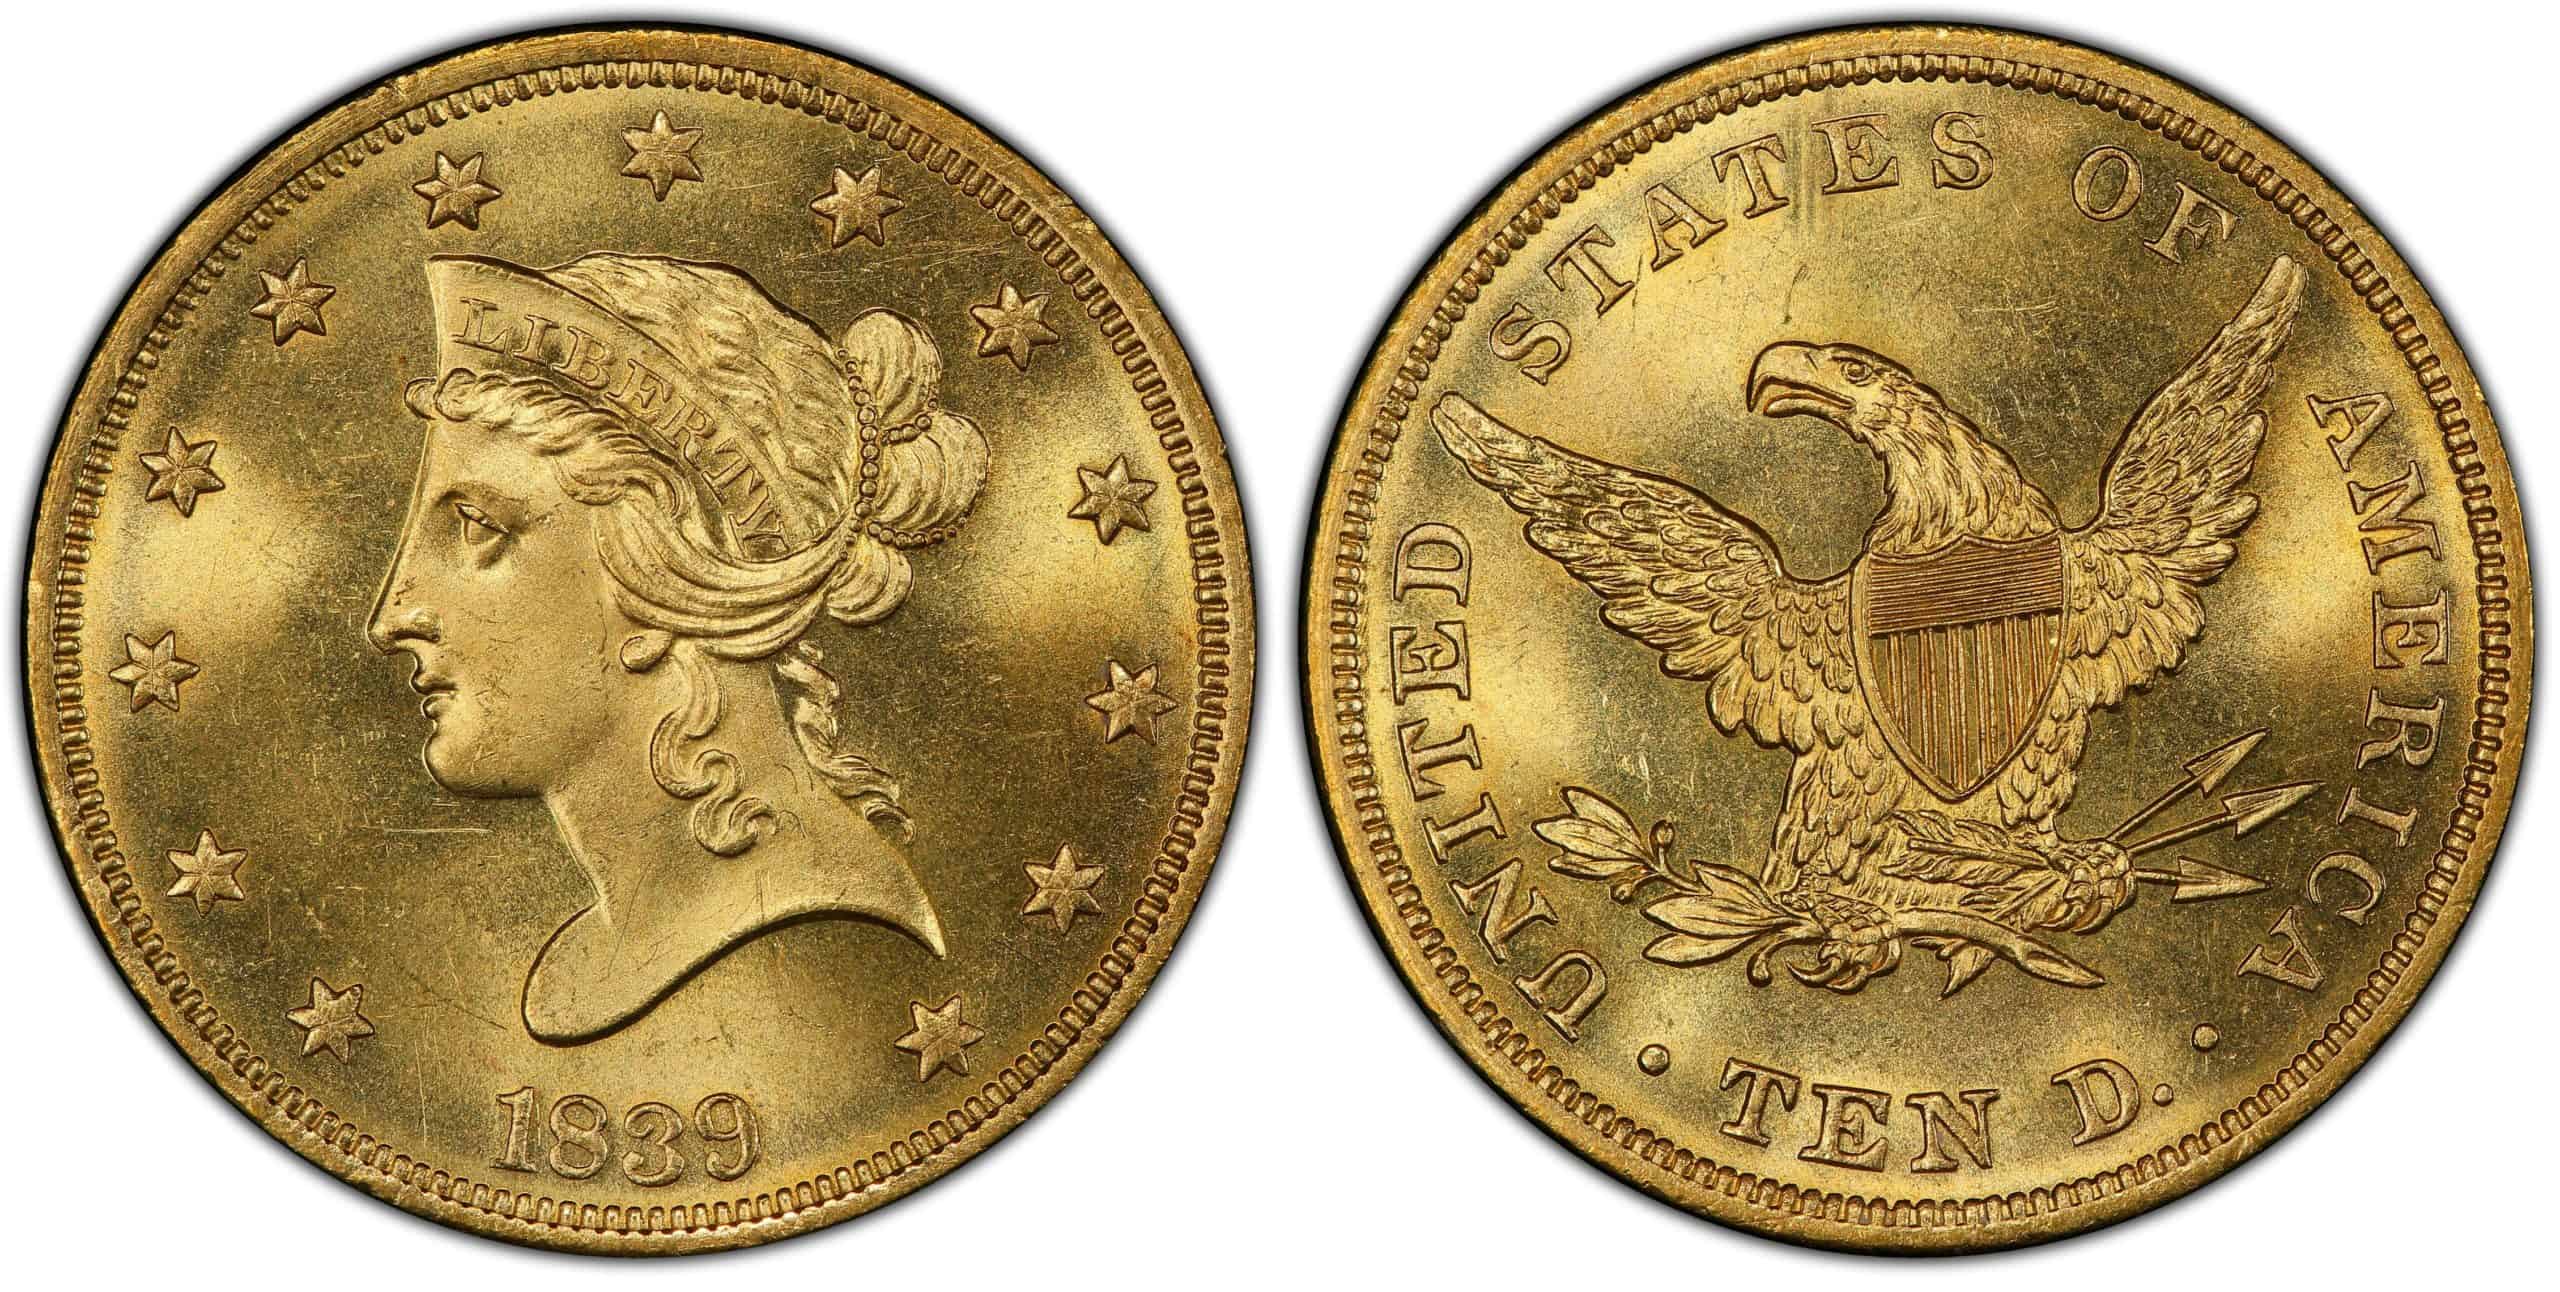 $10 Coronet Gold Eagle History